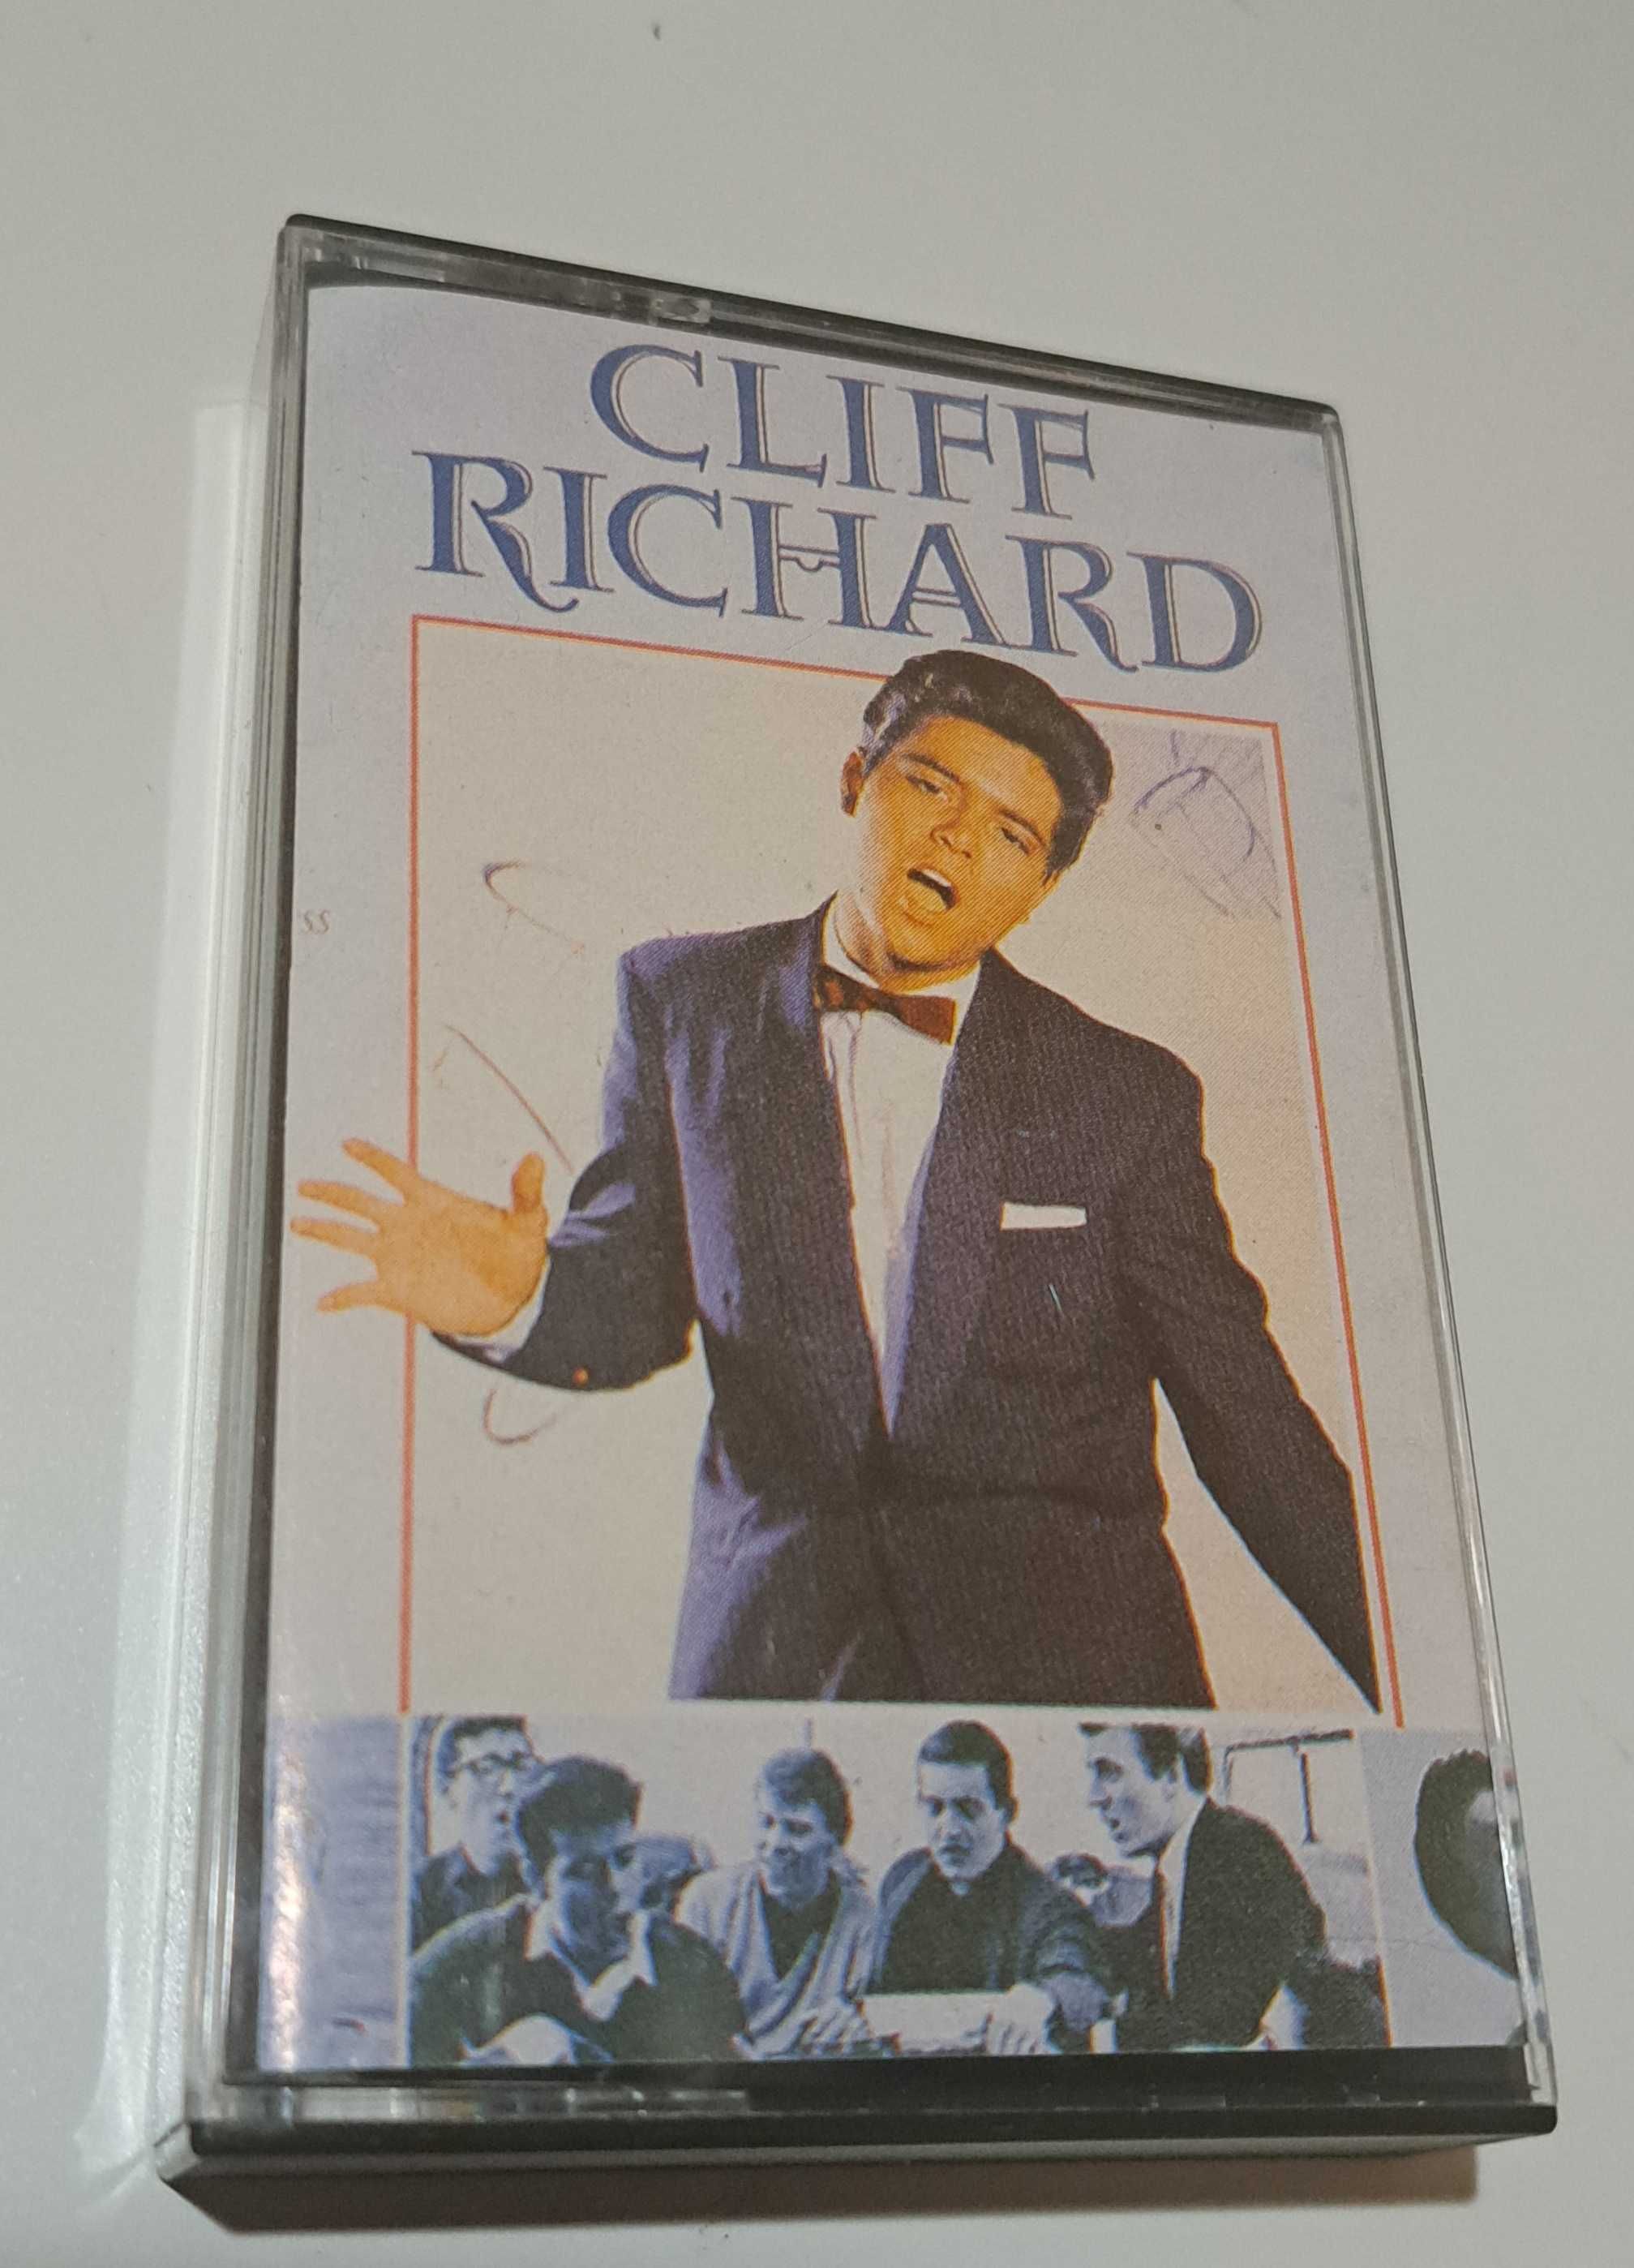 Cliff Richard Greatest Hits 16 kaseta audio